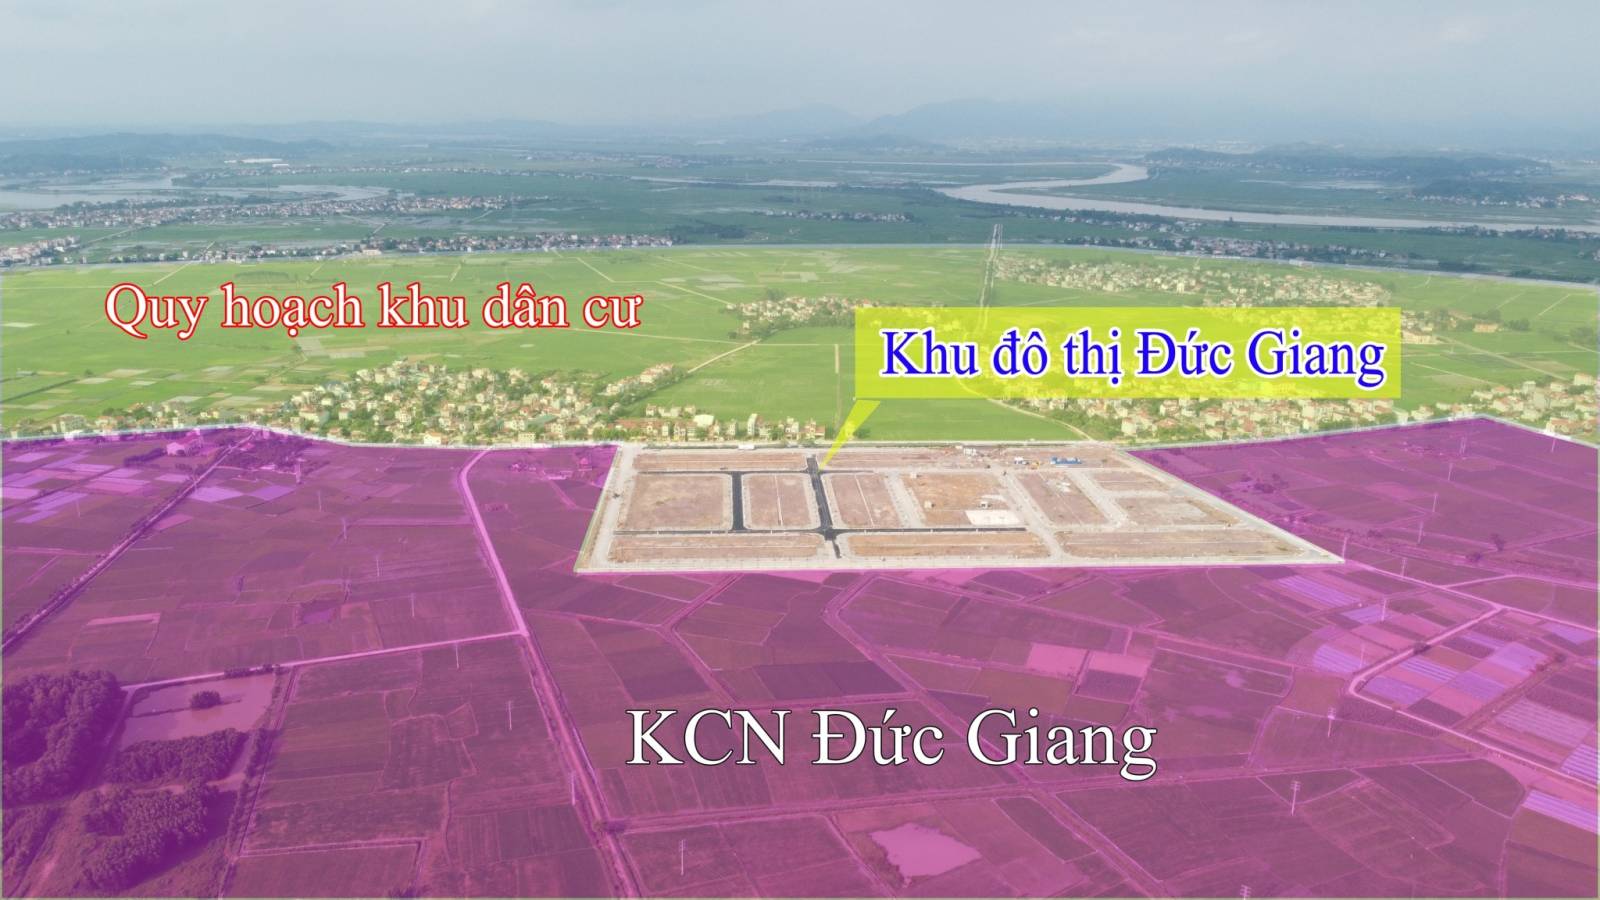 Đất nền cổng KCN 700ha Yên Dũng 70.000 công nhân, chỉ 1.X tỷ 1